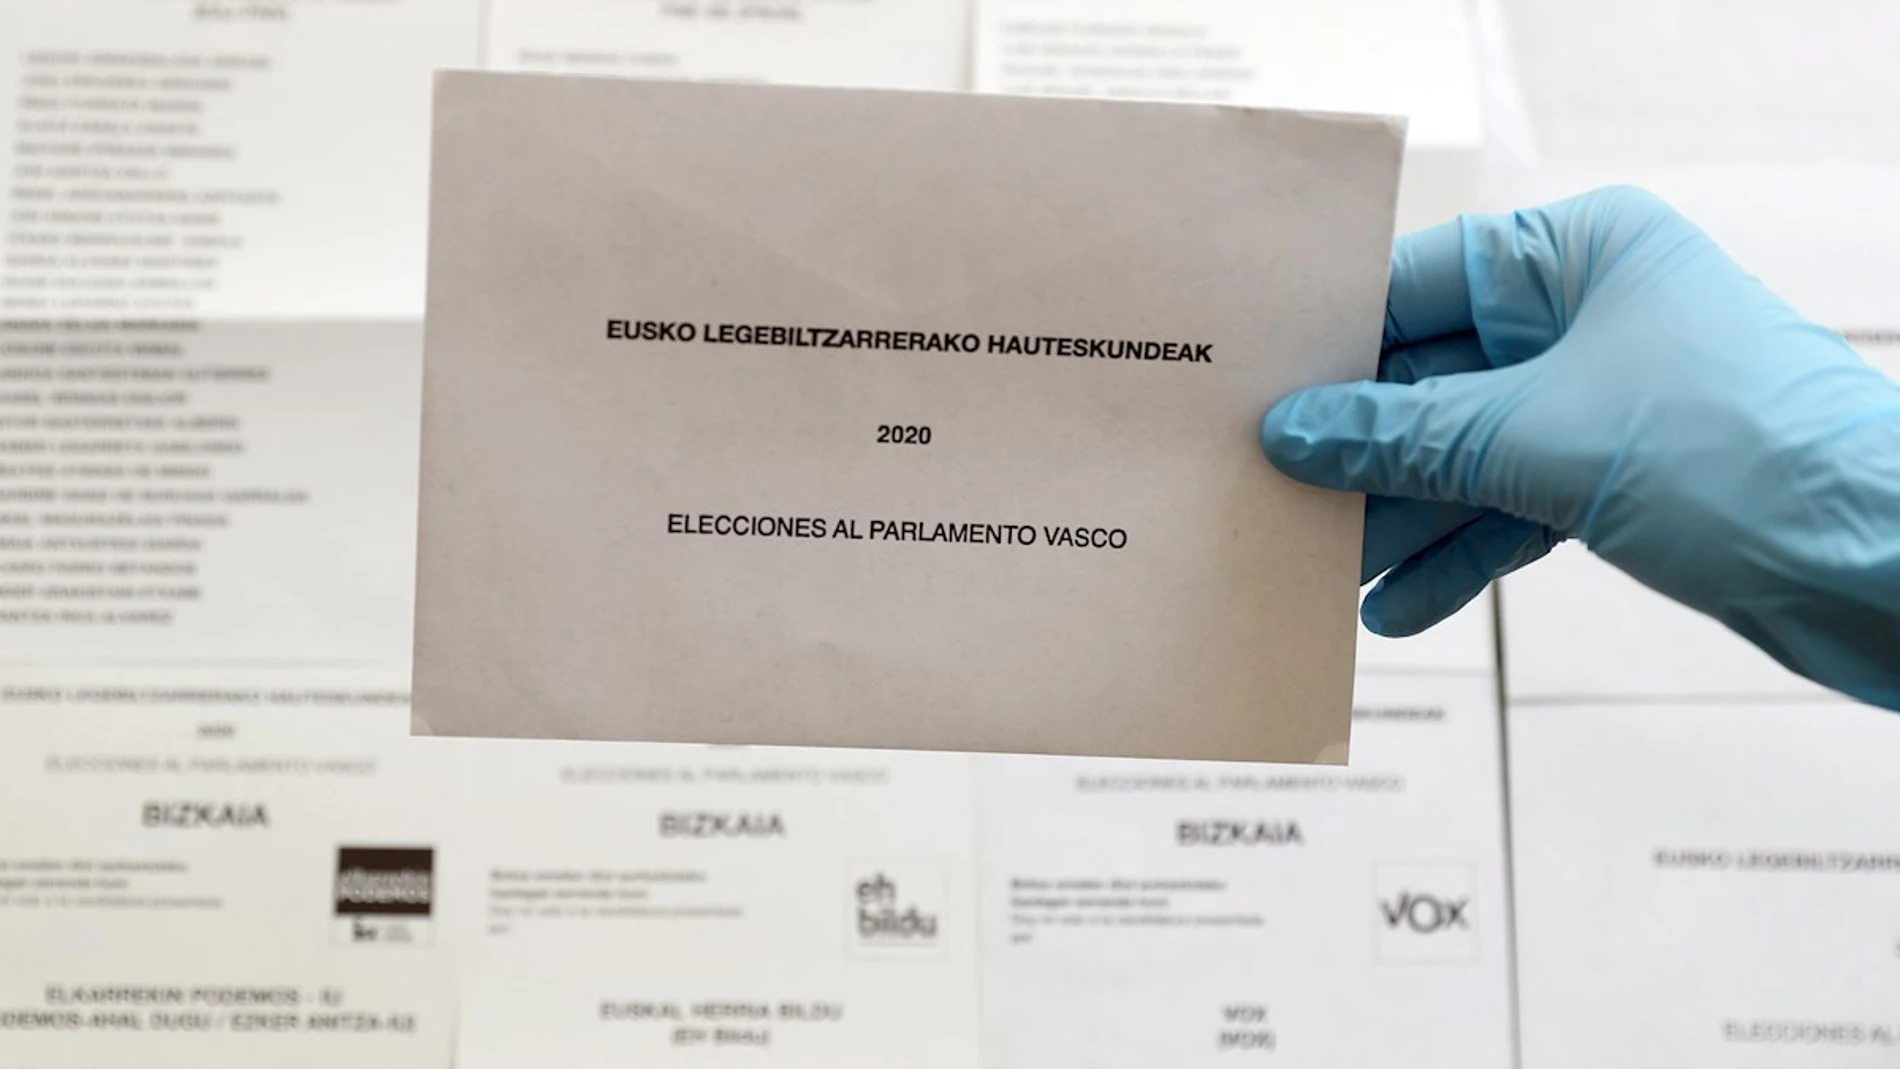 Papeletas y sobres para votar en las elecciones autonómicas vascas de 2020